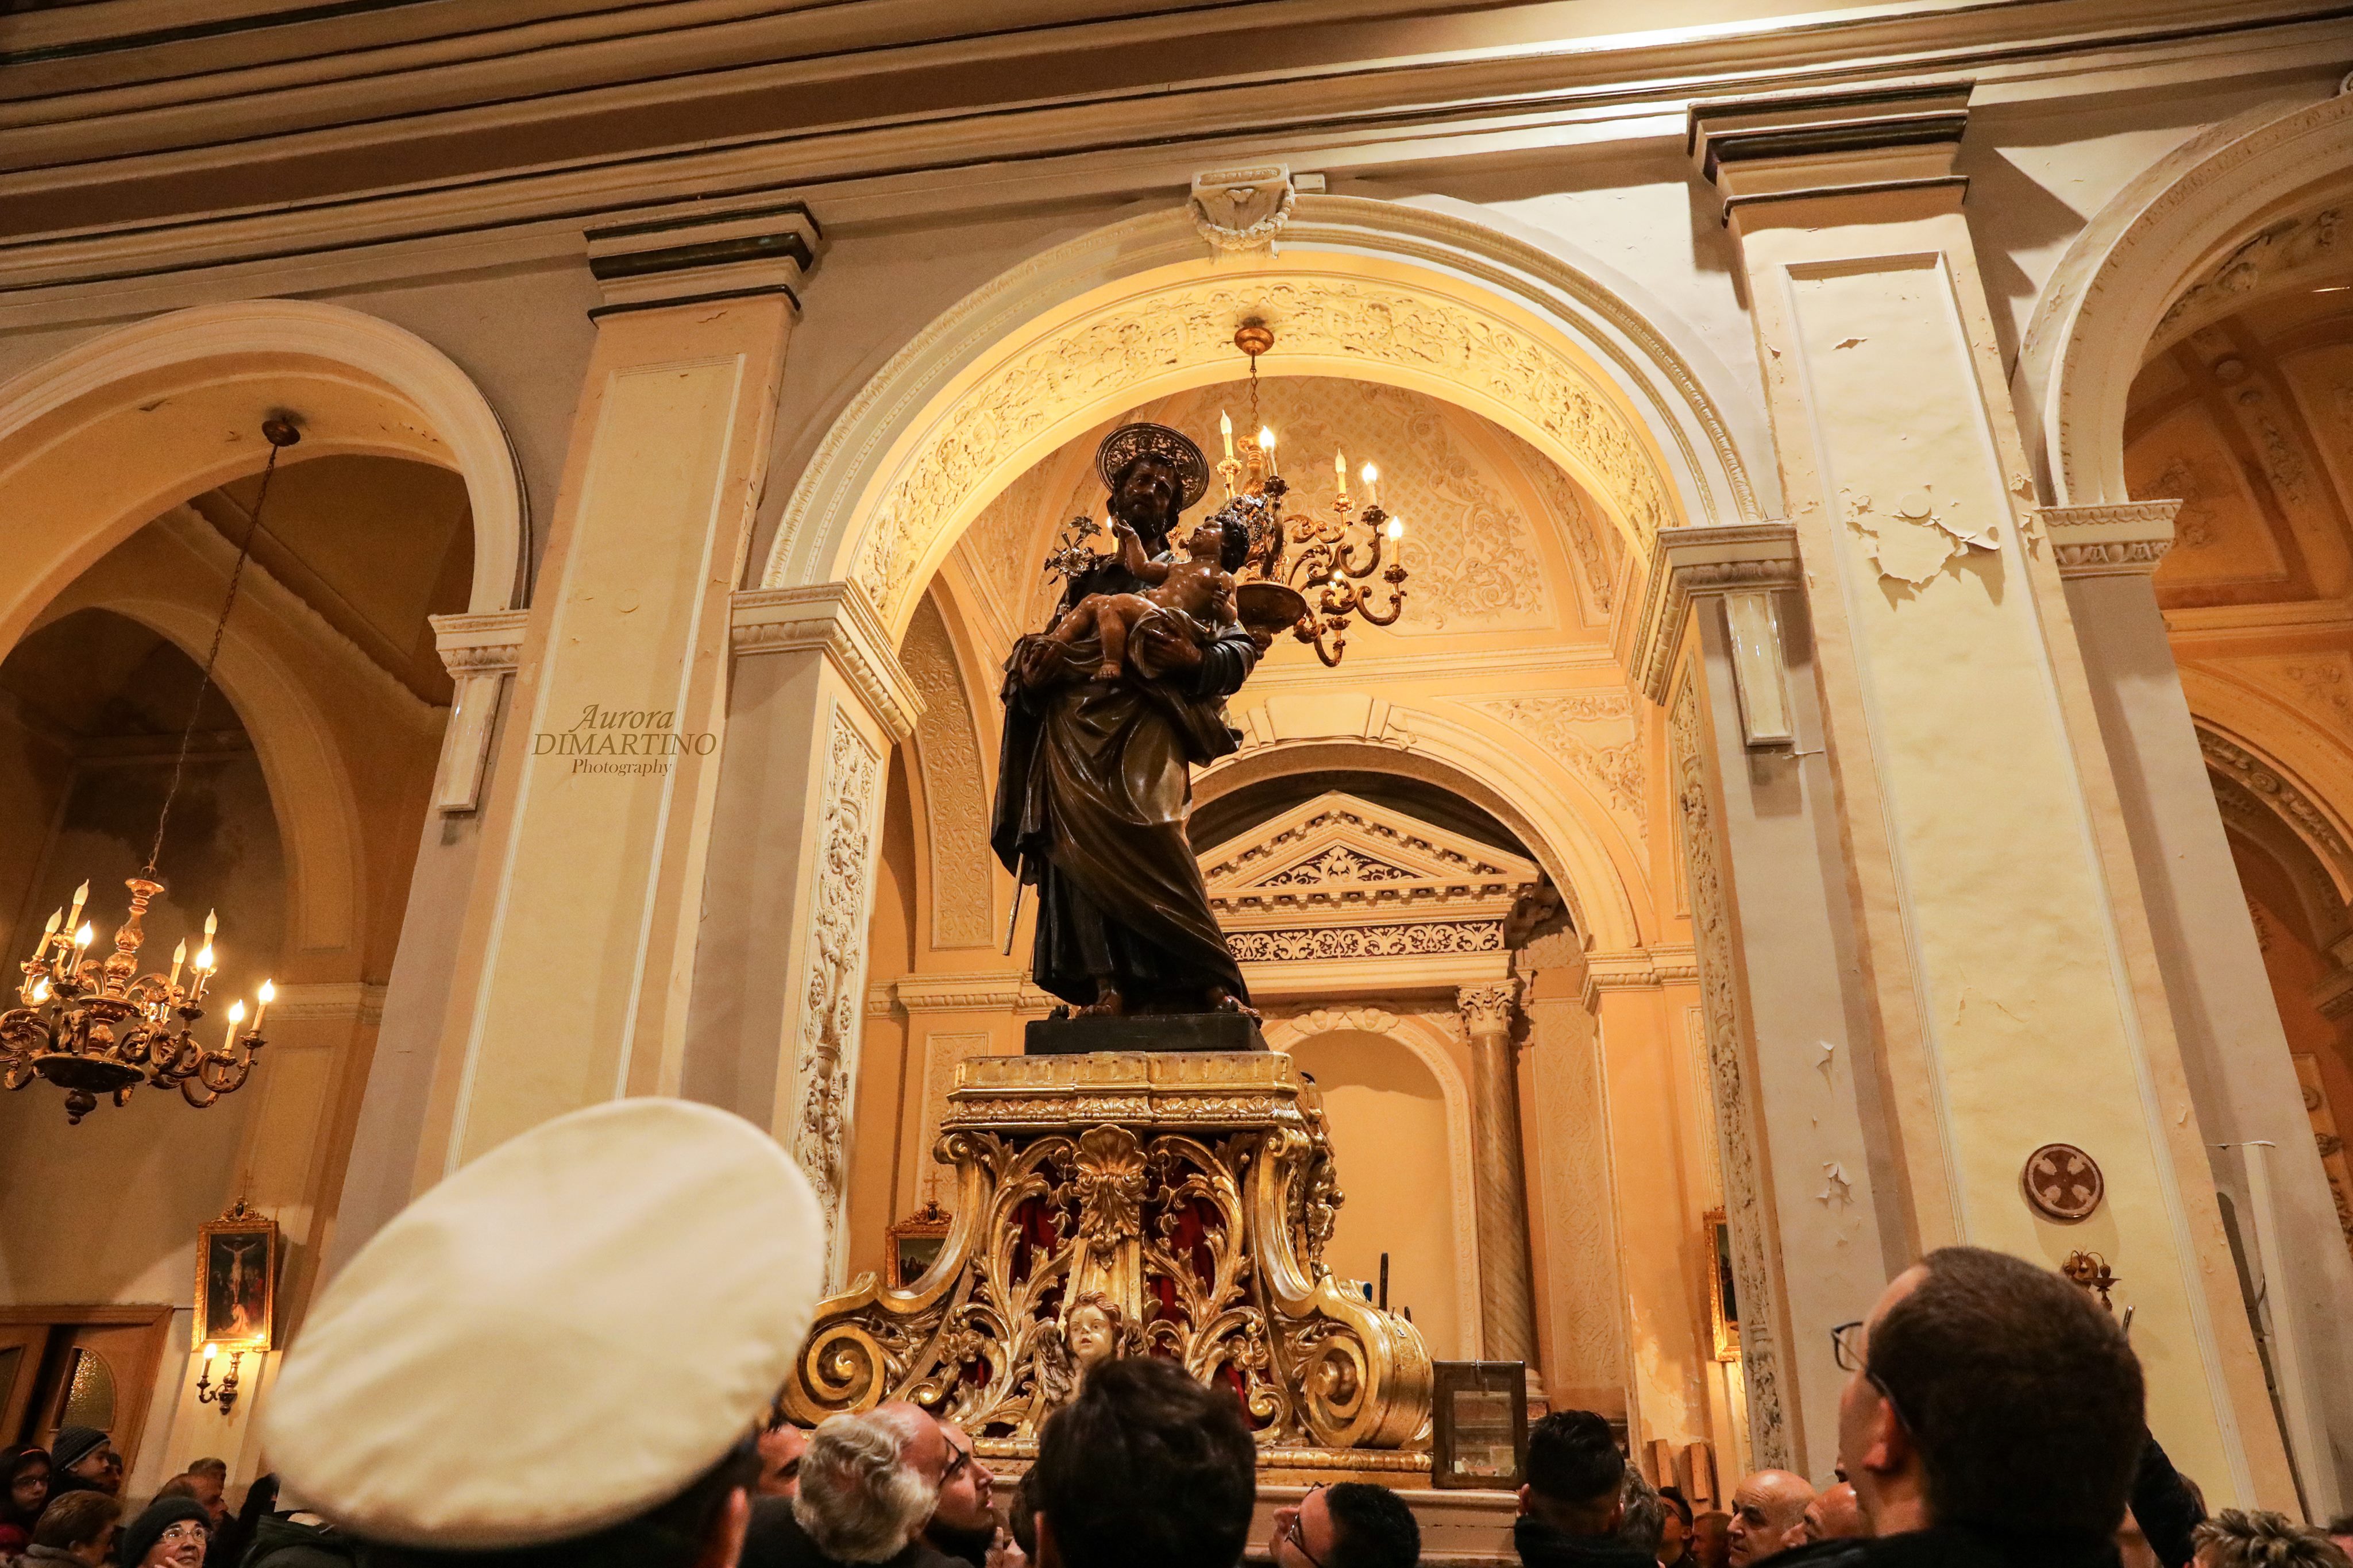  San Giuseppe, la festa è finita: la statua riposta nella nicchia FOTOGALLERY